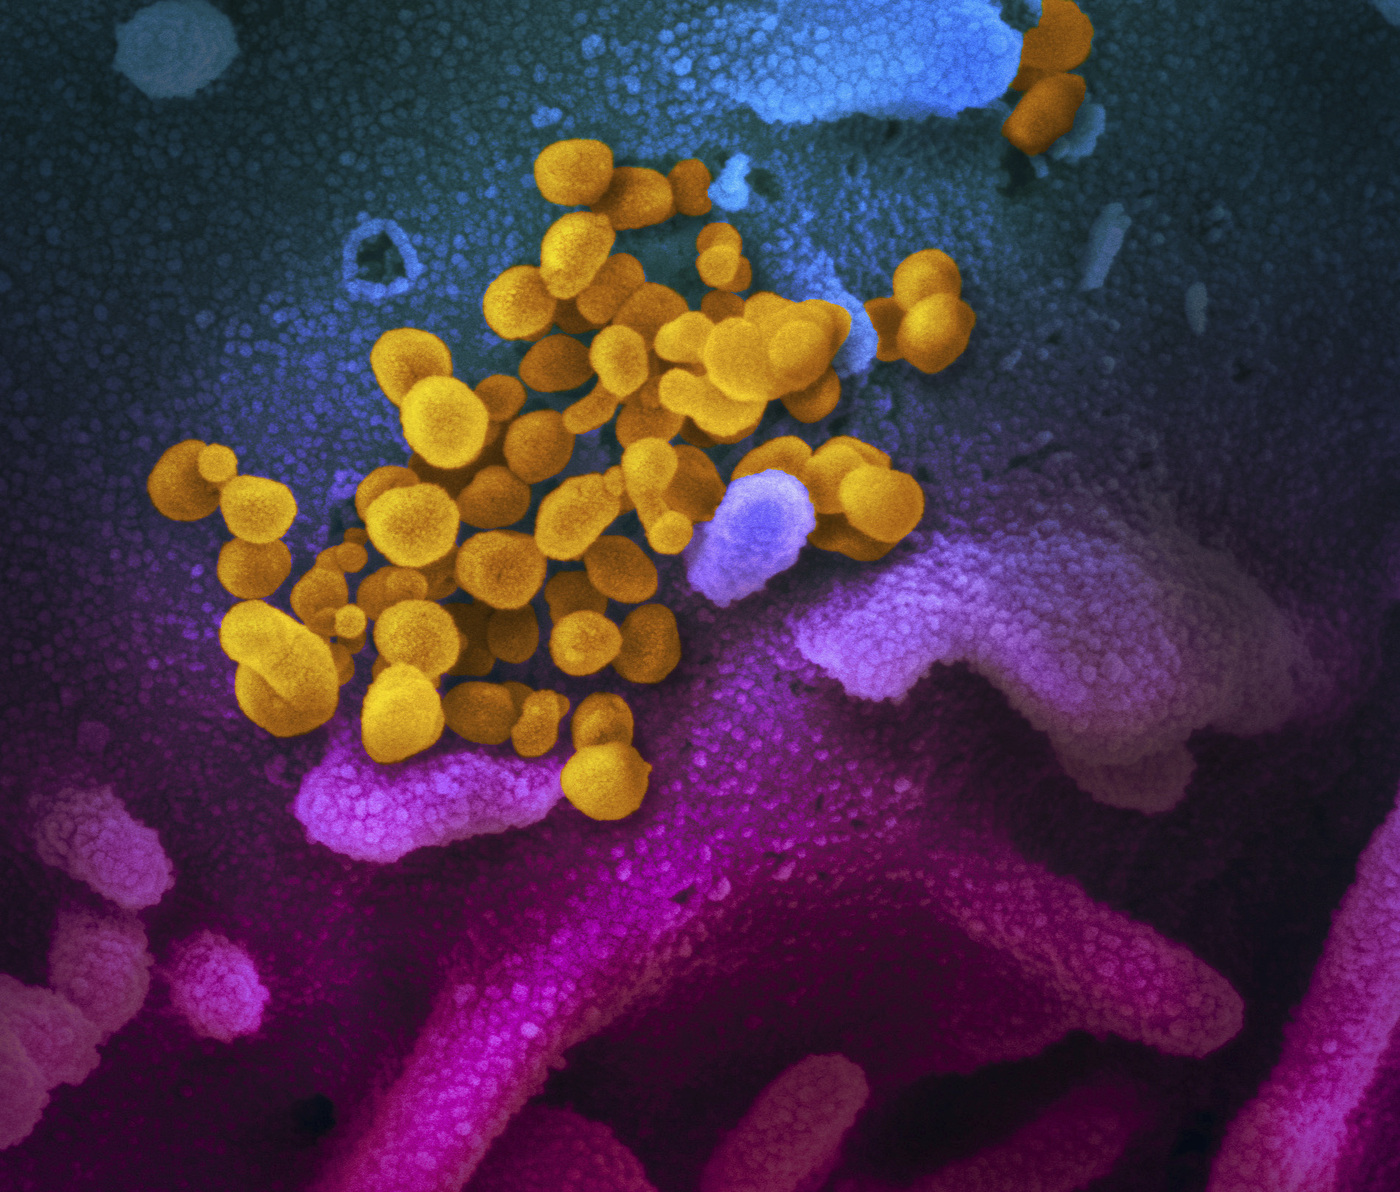 Coronavirus, nuove immagini al microscopio (LaPresse)